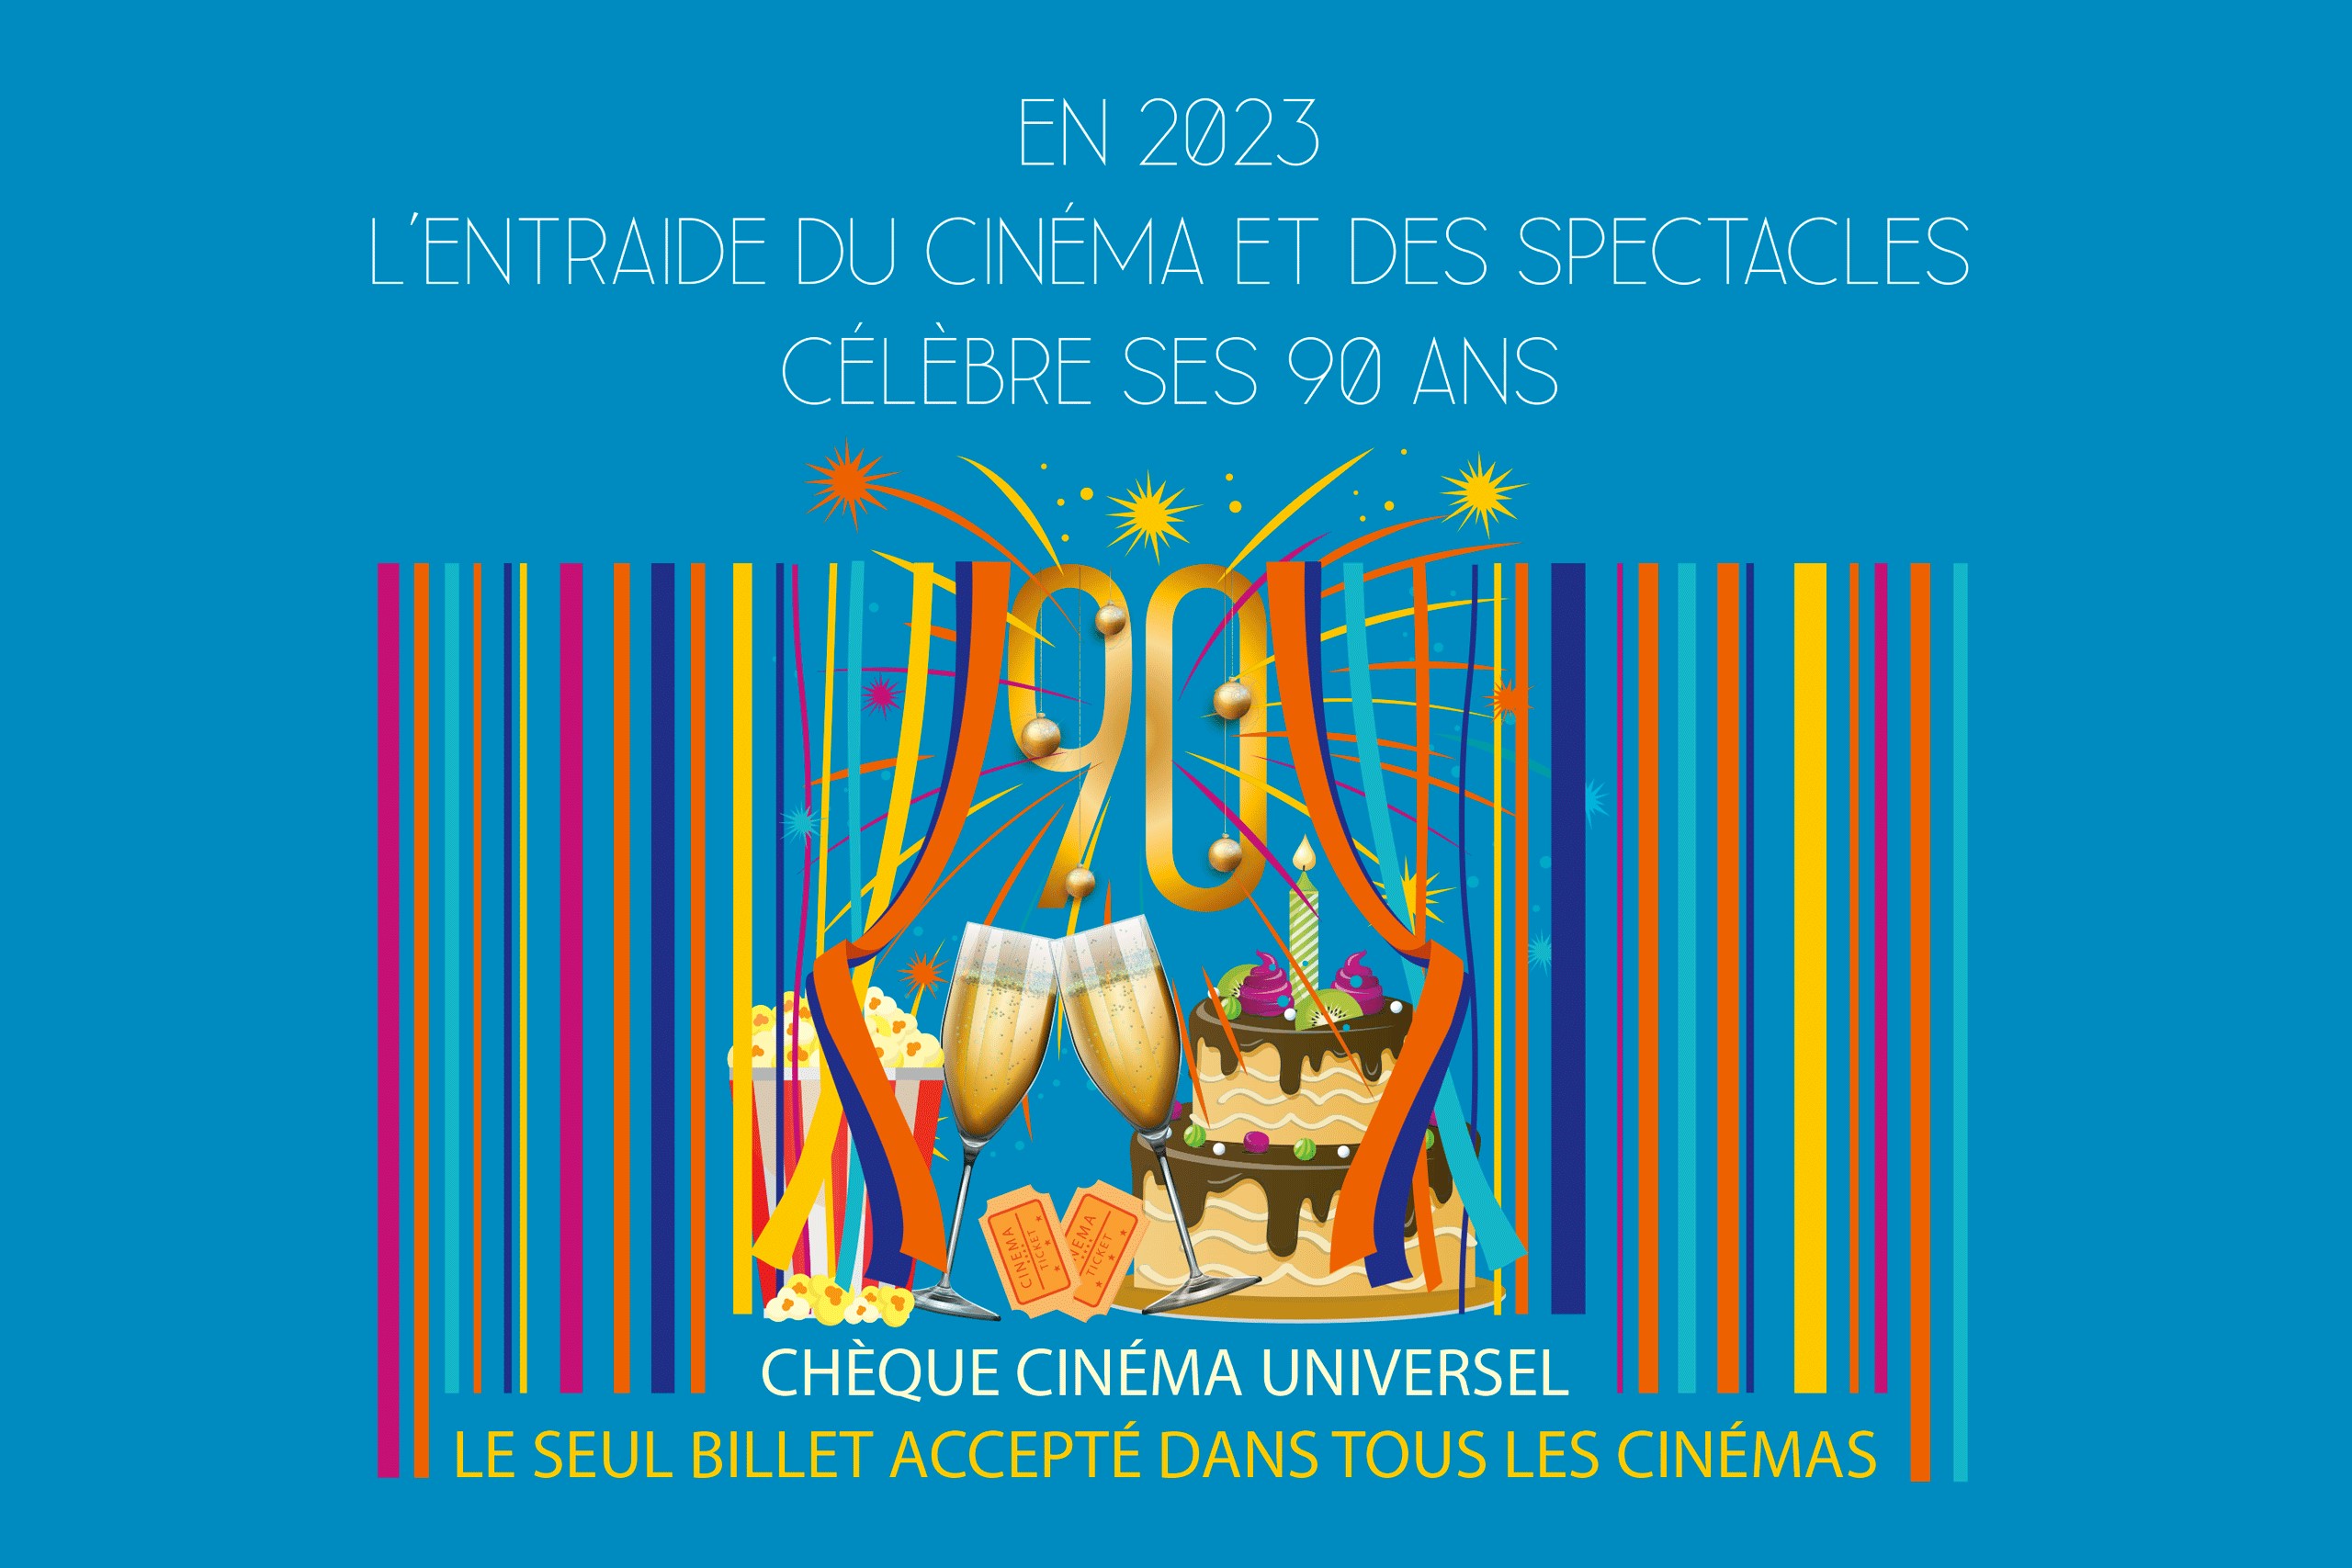 Toute l’équipe de l’Entraide du Cinéma et du Chèque Cinéma Universel vous souhaite une très bonne année 2023